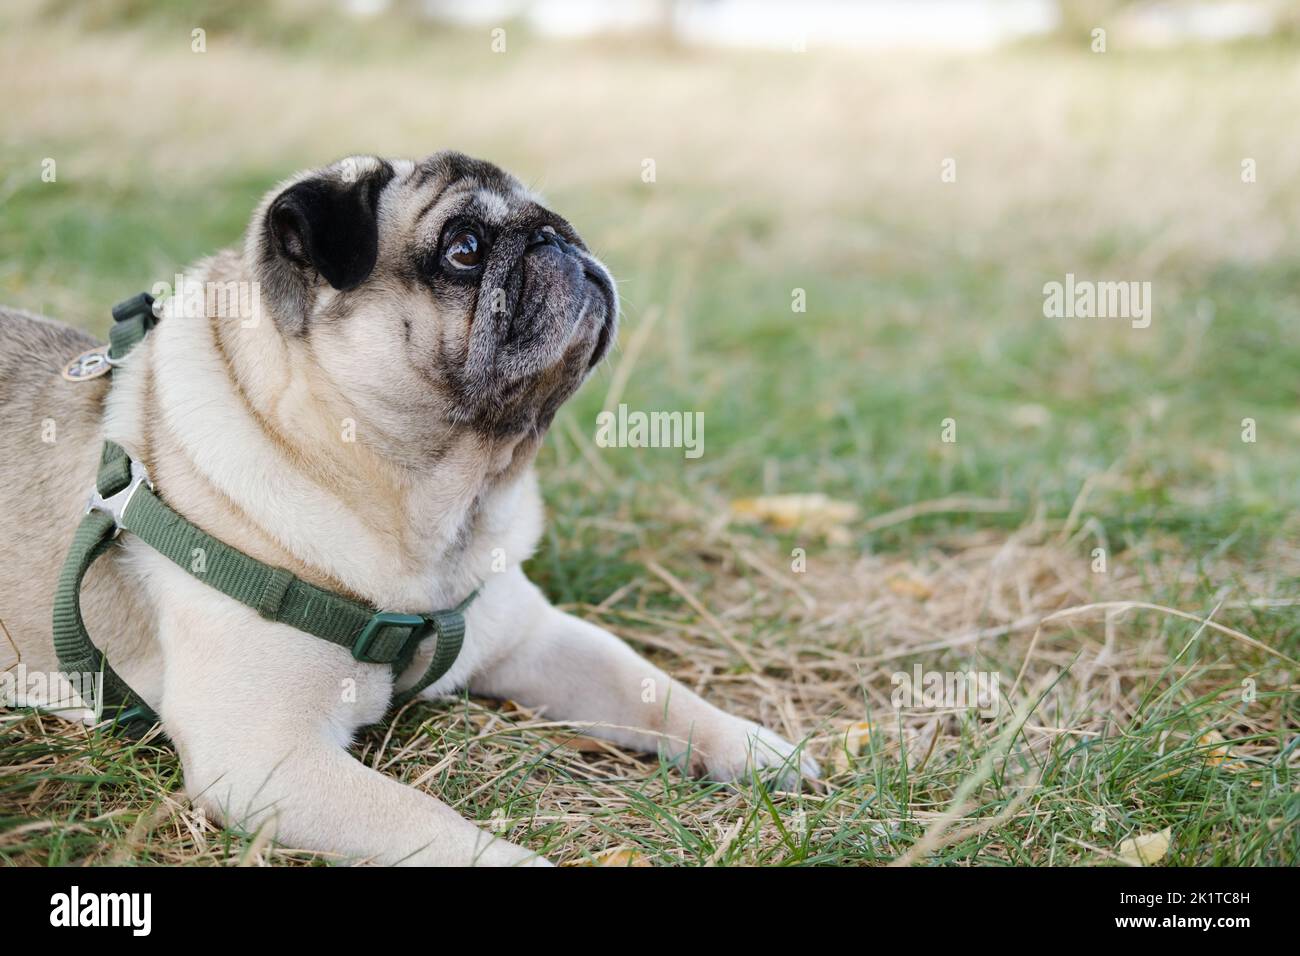 Lustiger Mops, der nach oben schaut und draußen auf dem Rasen liegt. Schöne alternde Hund Porträt, kopieren Raum Bild Stockfoto